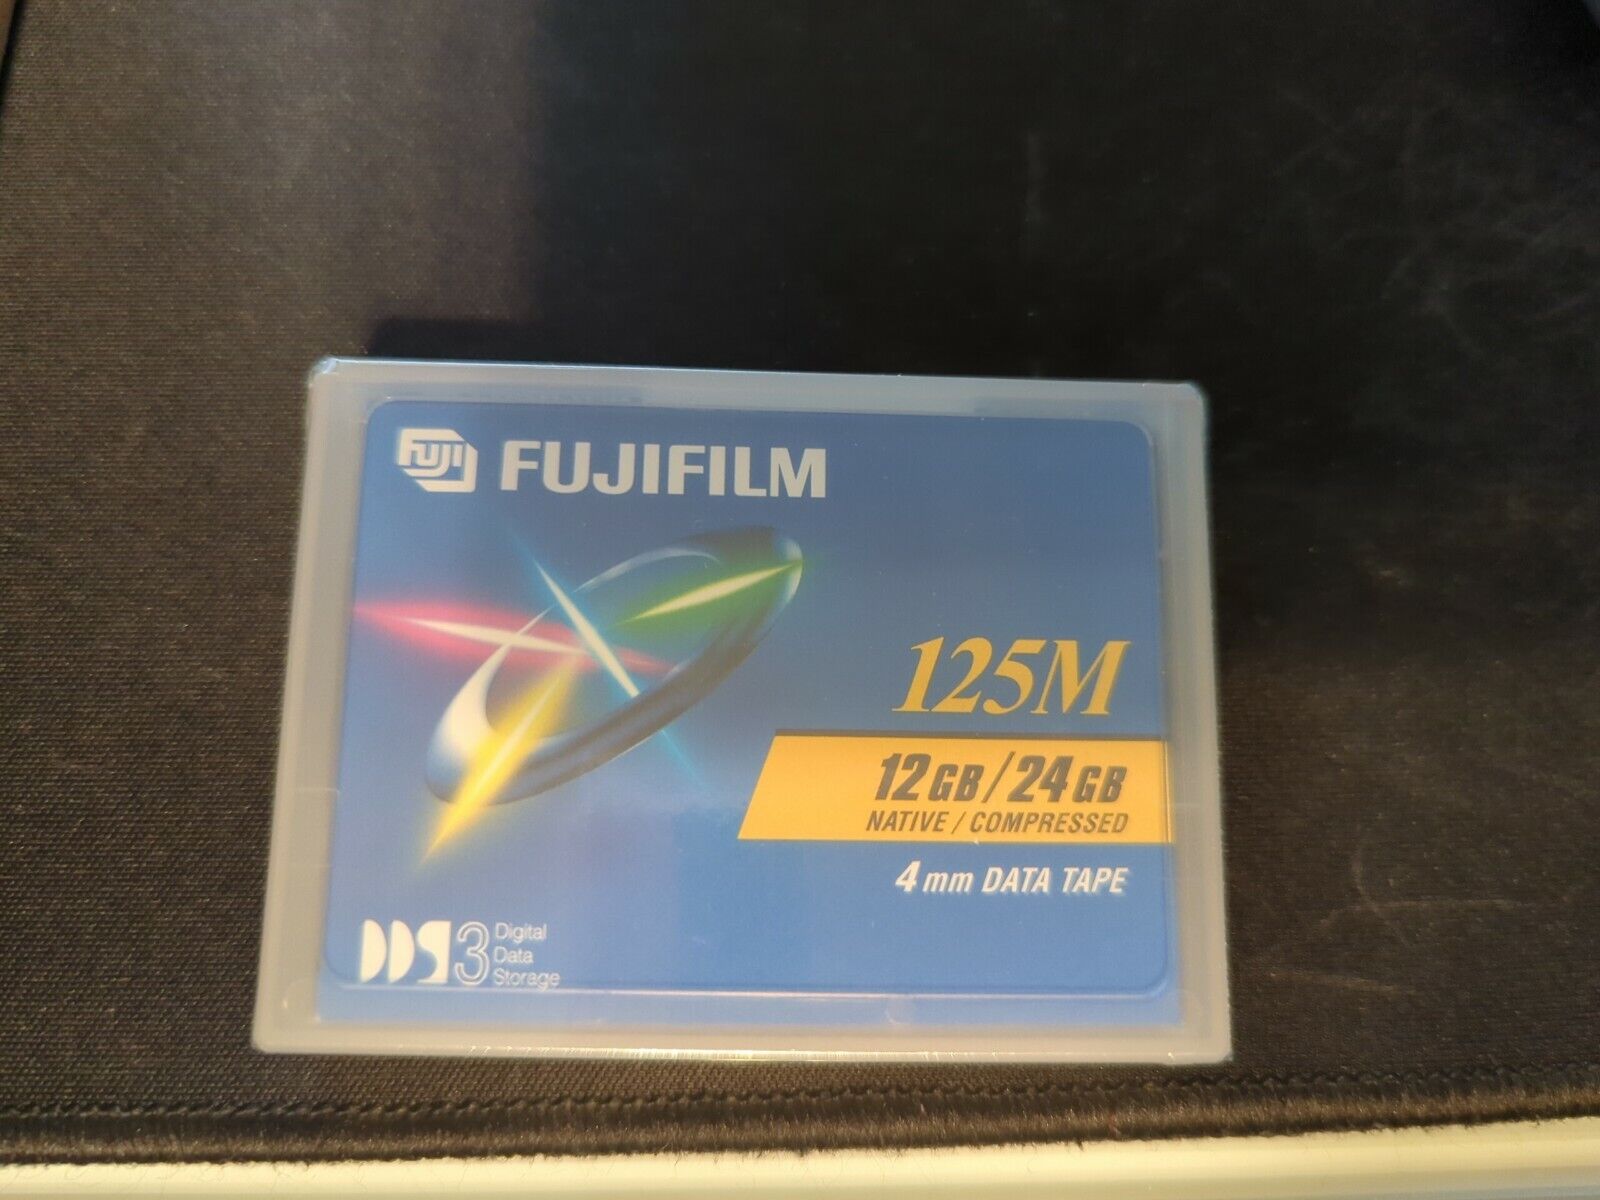 Lot of 10 Sealed FujiFilm DDS3 125m 12gb/24gb(compressed) 4mm Data Tape Fuji 